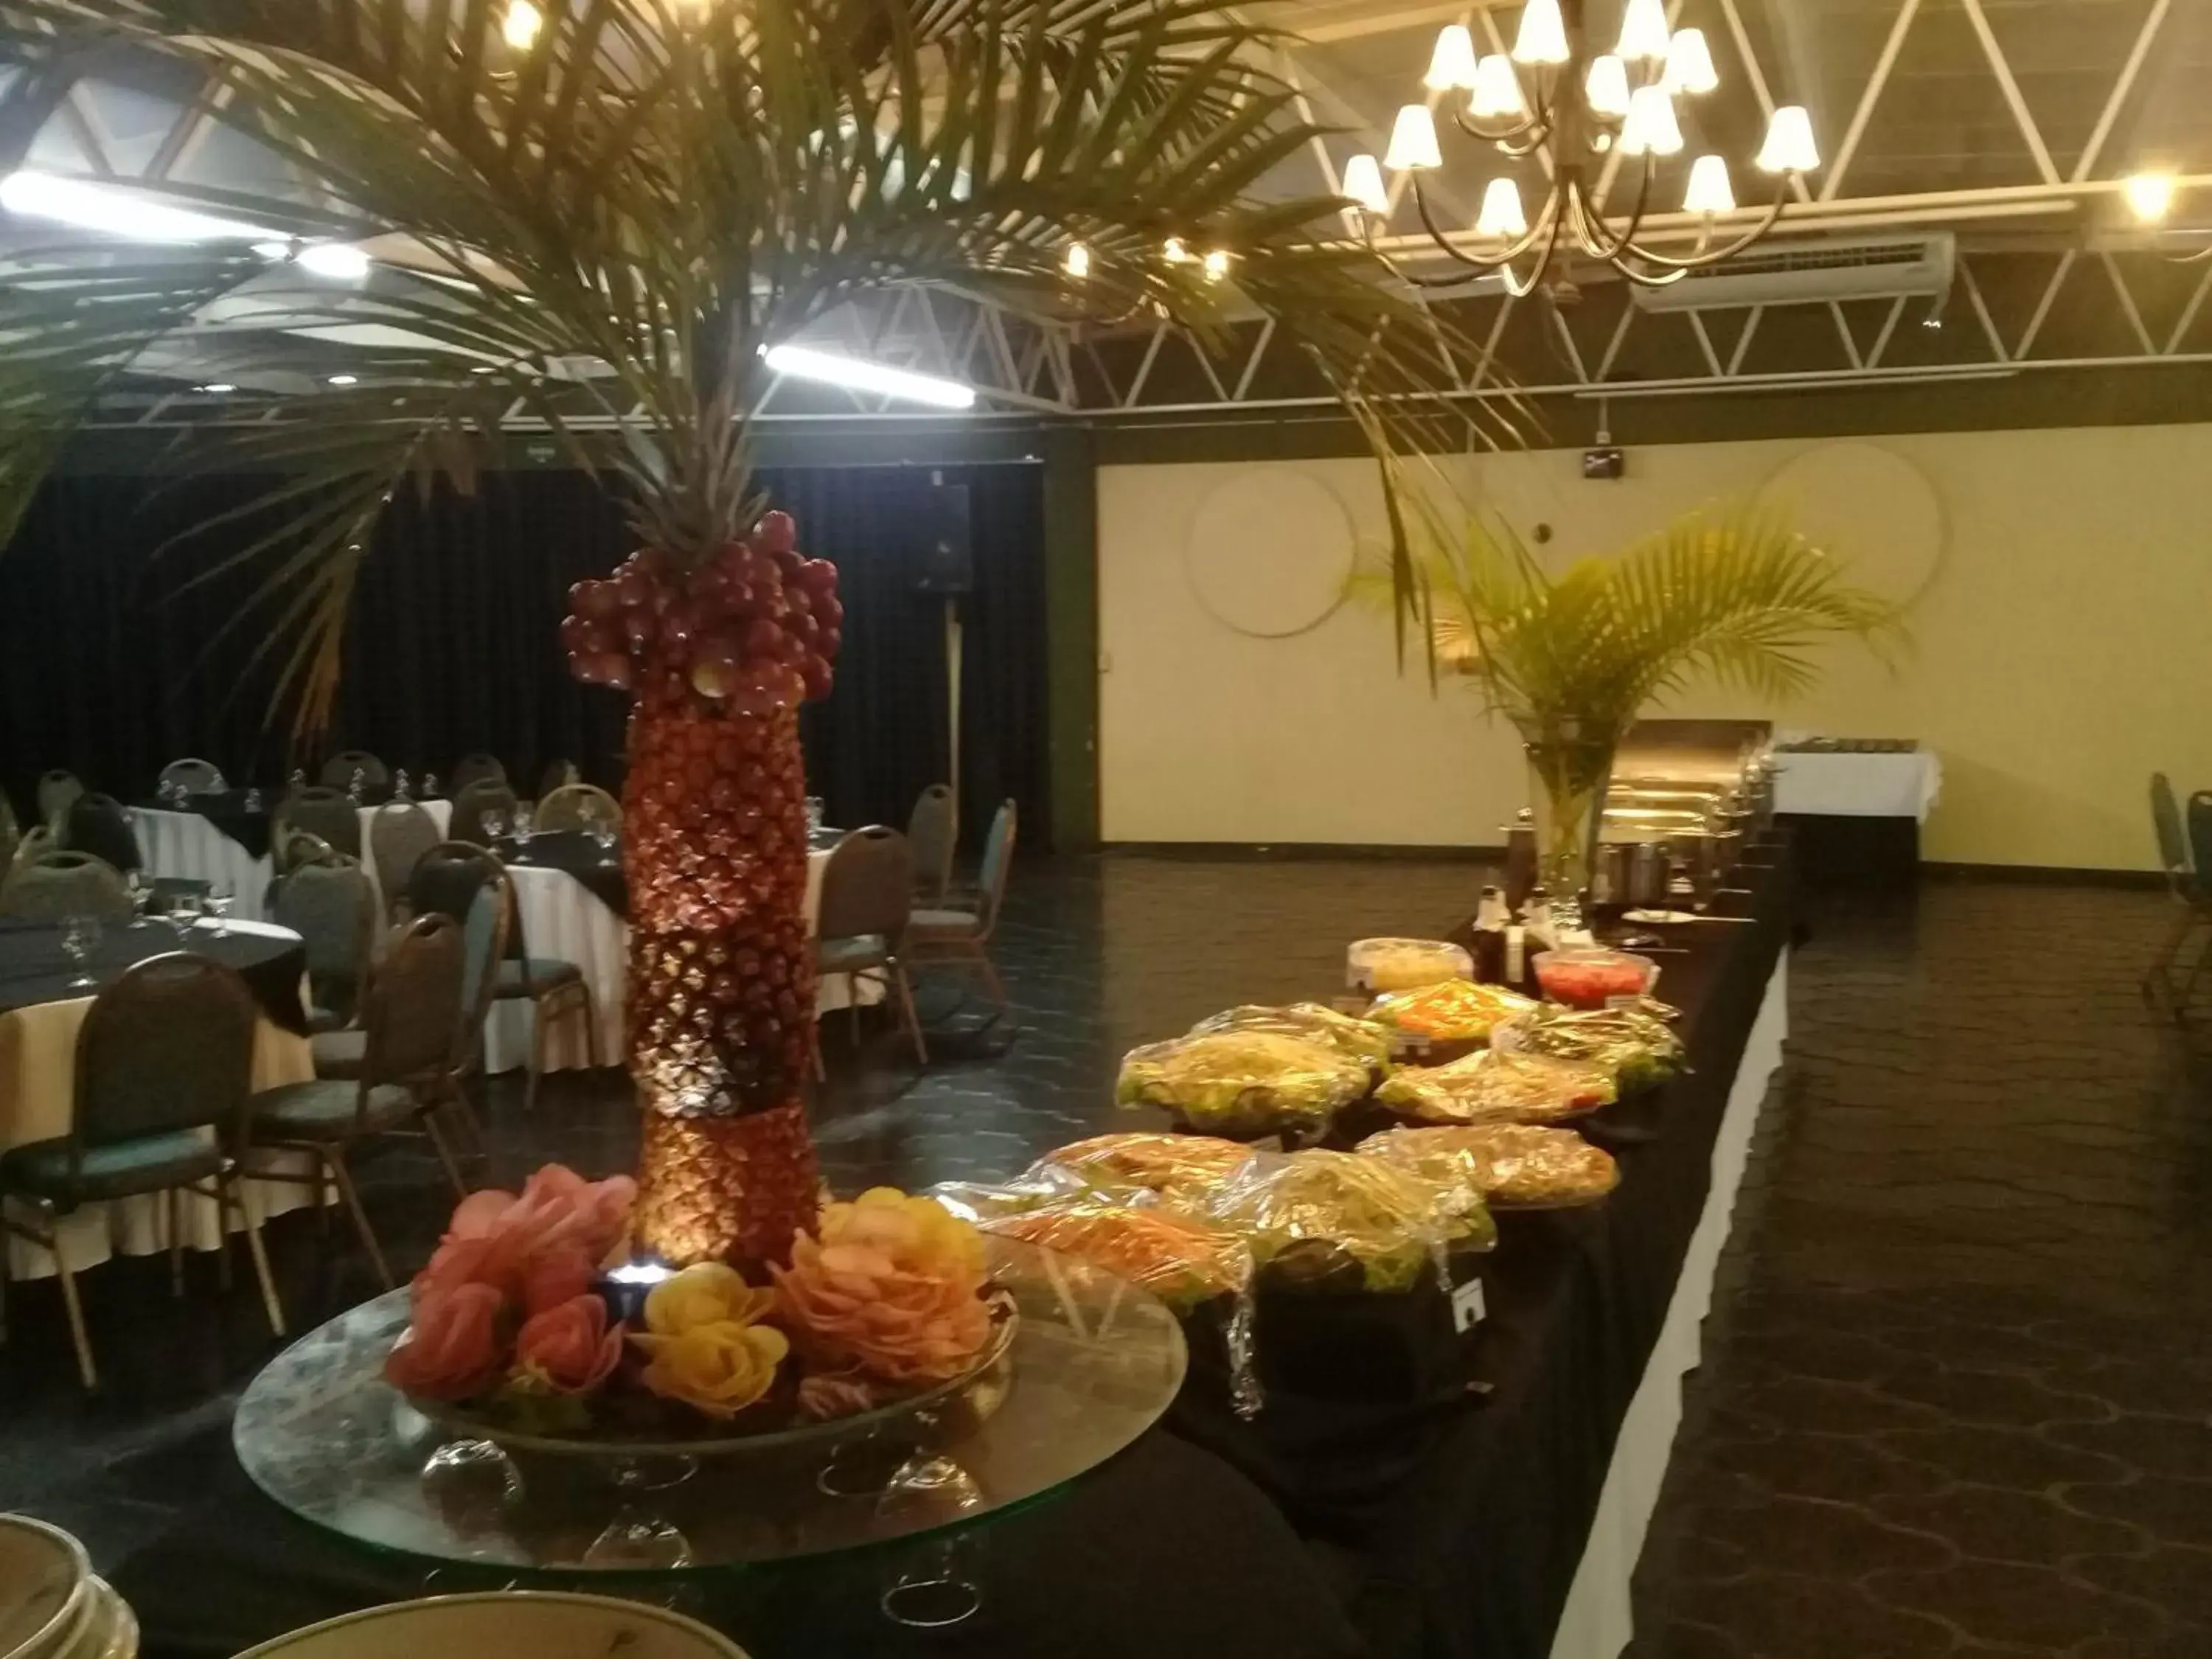 Banquet/Function facilities, Banquet Facilities in Canoas Parque Hotel